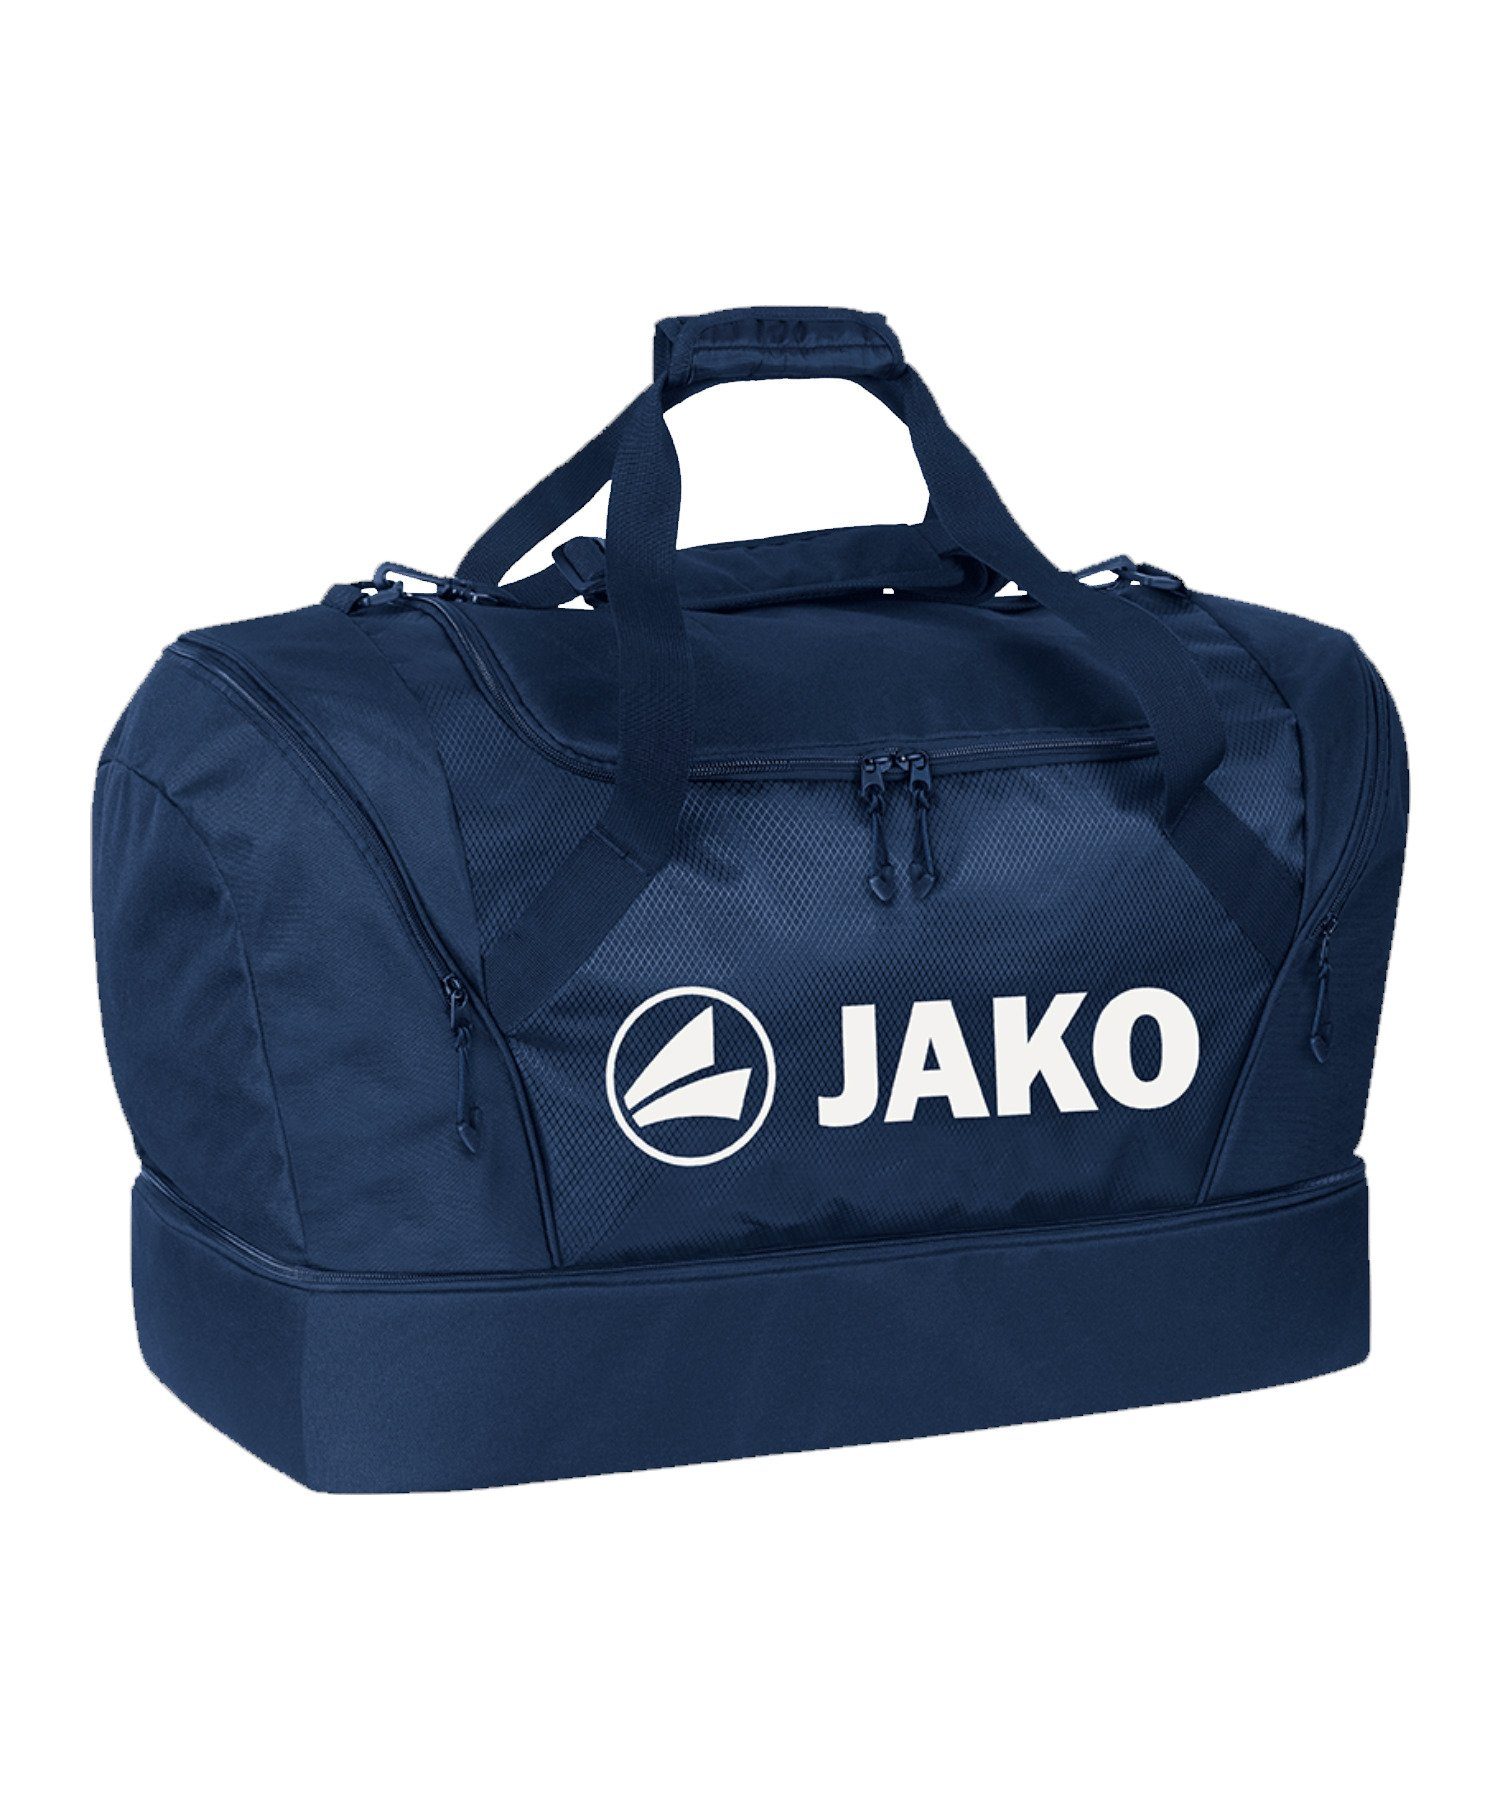 Jako Sporttasche Sporttasche mit breit Junior, Bodenfach blau